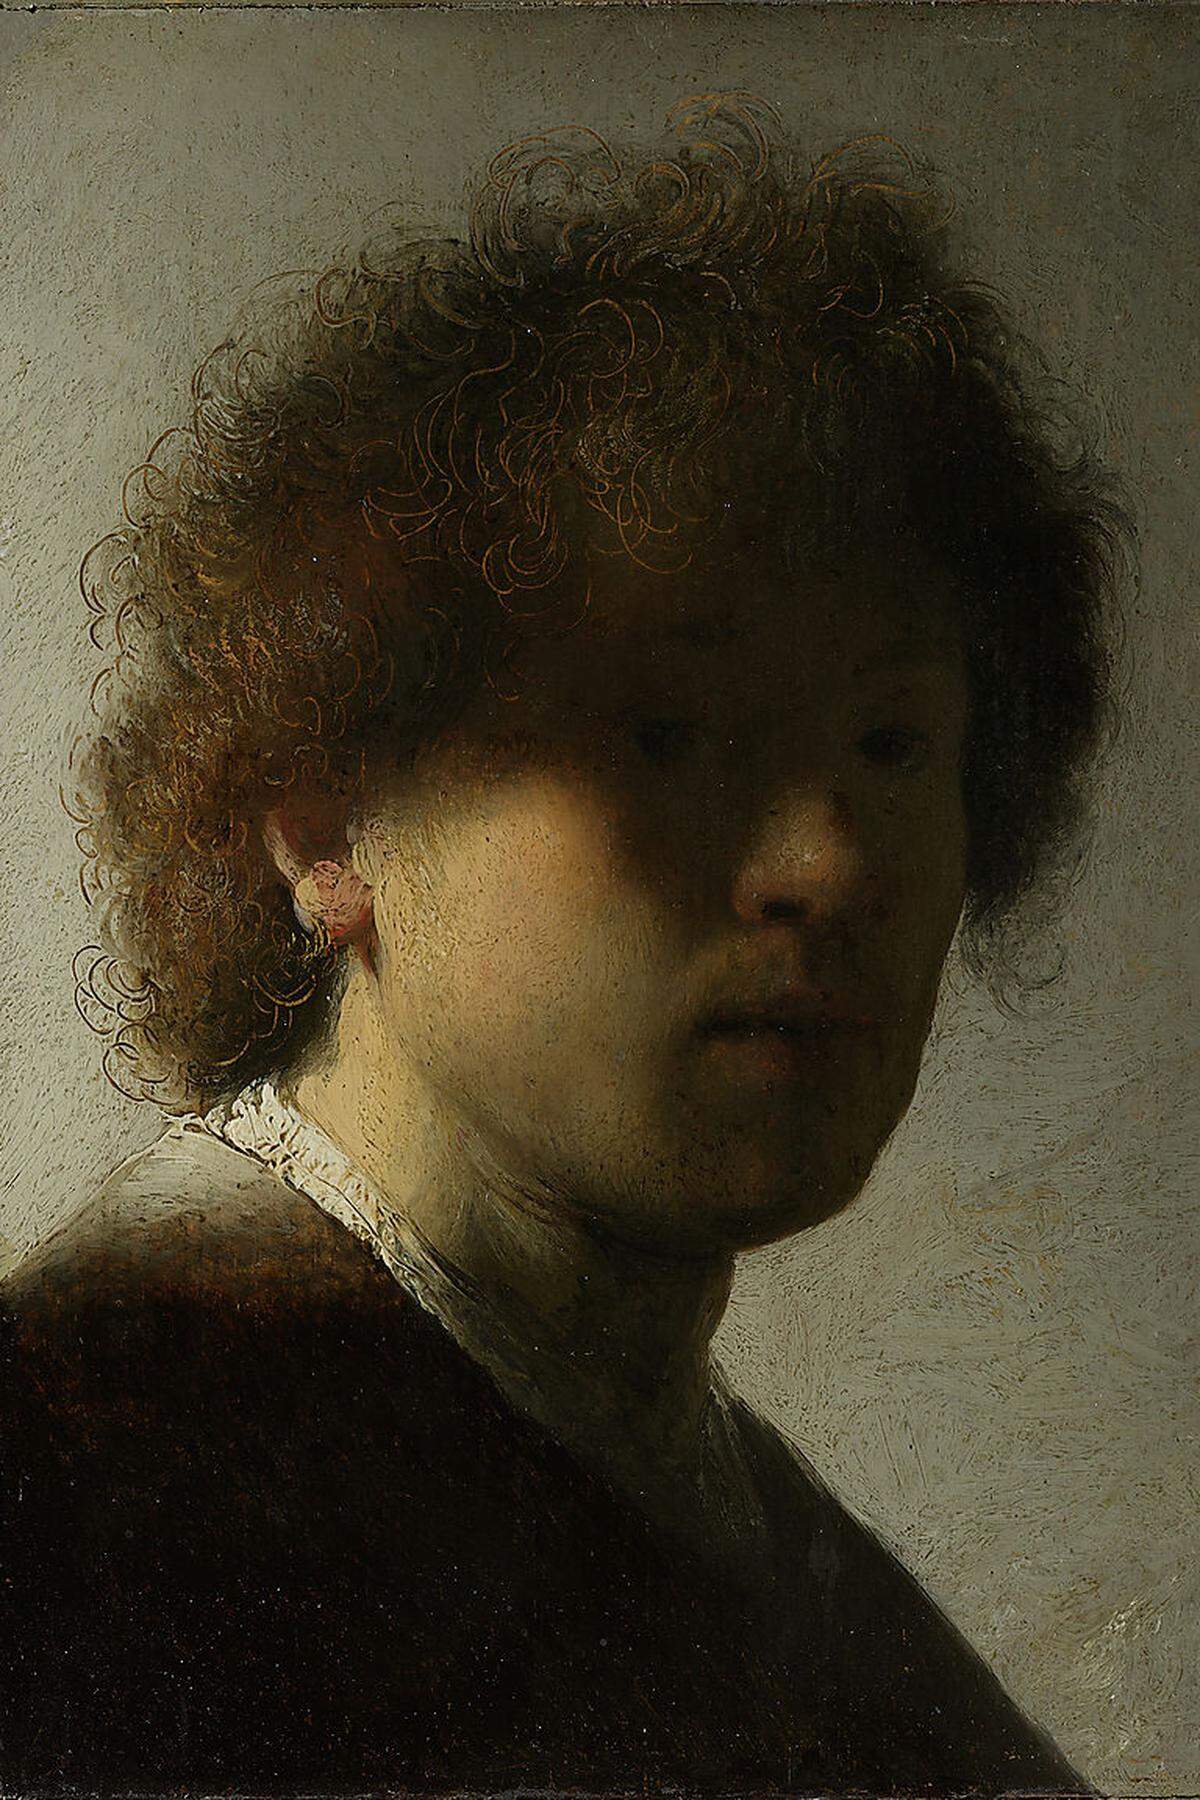 Als Meister der "Selfies" gilt Rembrandt (1606-1669). Der niederländische Barockkünstler stellte sich selbst zig Mal in unterschiedlichen Körperhaltungen dar. 1628, im Alter von 22 Jahren, hüllte er sein Gesicht in mysteriöse Schatten, aus denen er uns durchdringend anschaut. Das Gemälde ist im Amsterdamer Rijksmuseum ausgestellt.  Rembrandt van Rijn: Self-portrait at an early age“, 1628. Öl auf Holz. Bild: Rijksmuseum Amsterdam.